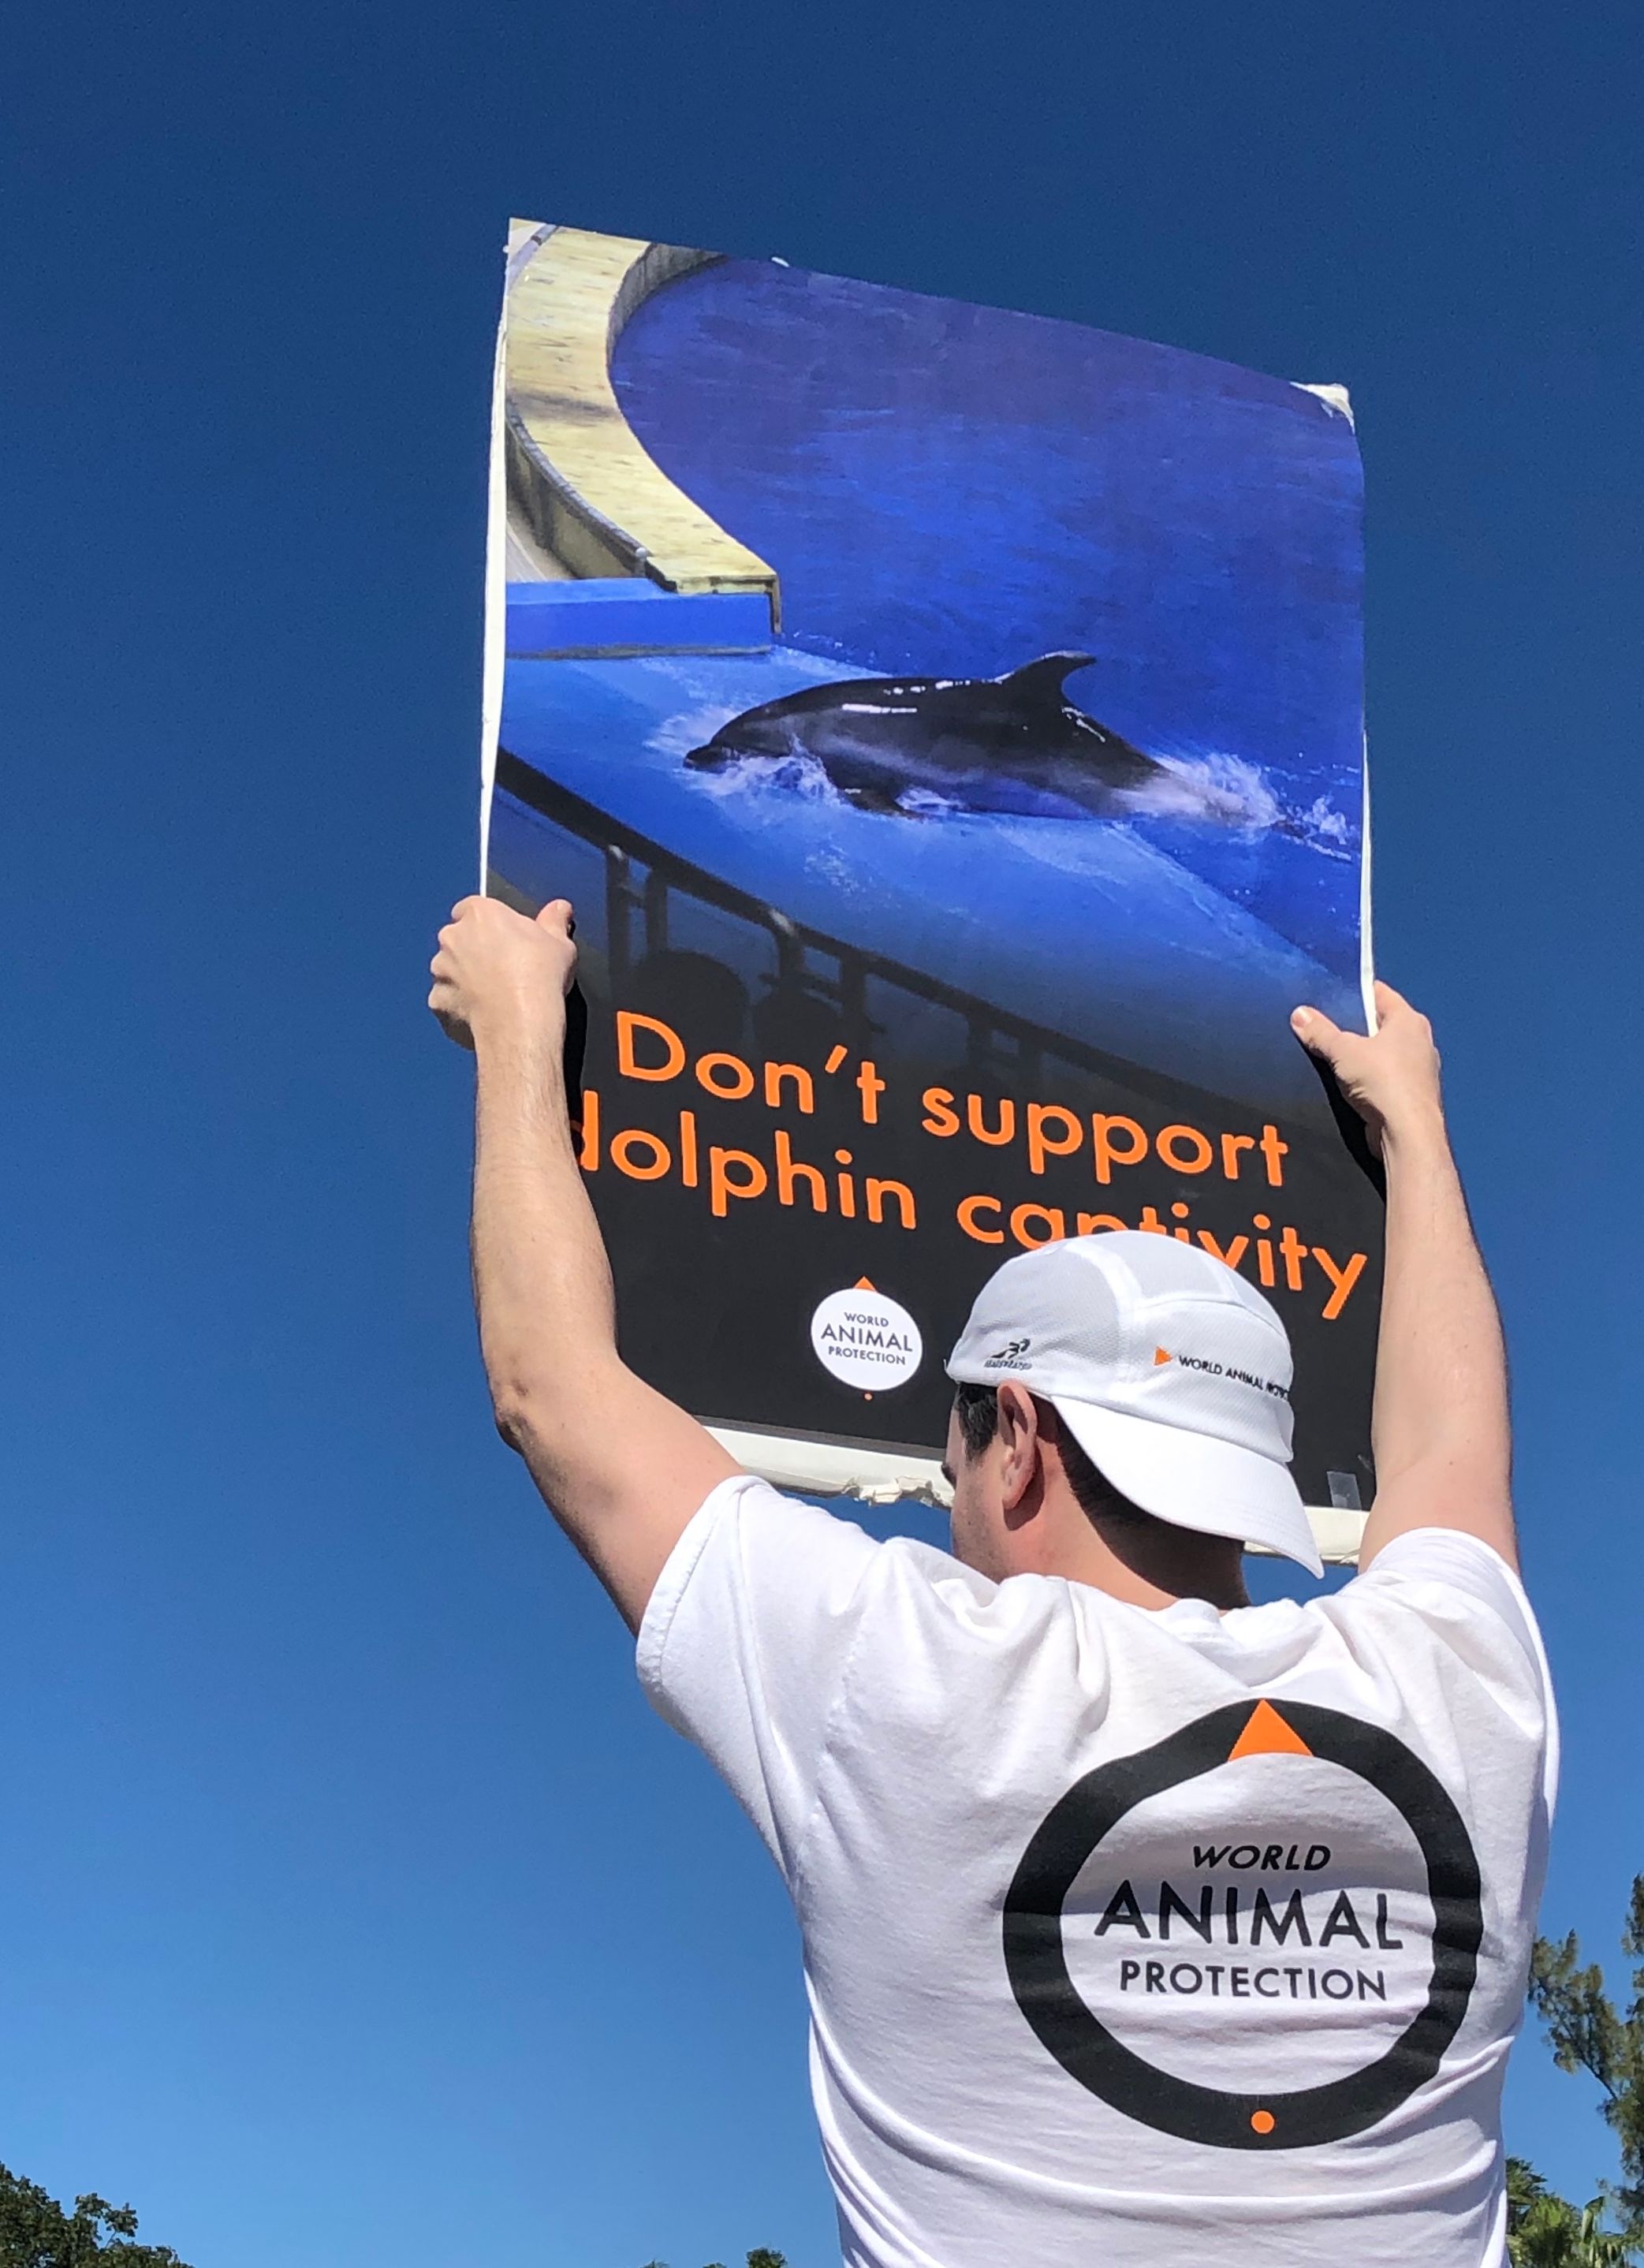 A supporter protesting in Miami.